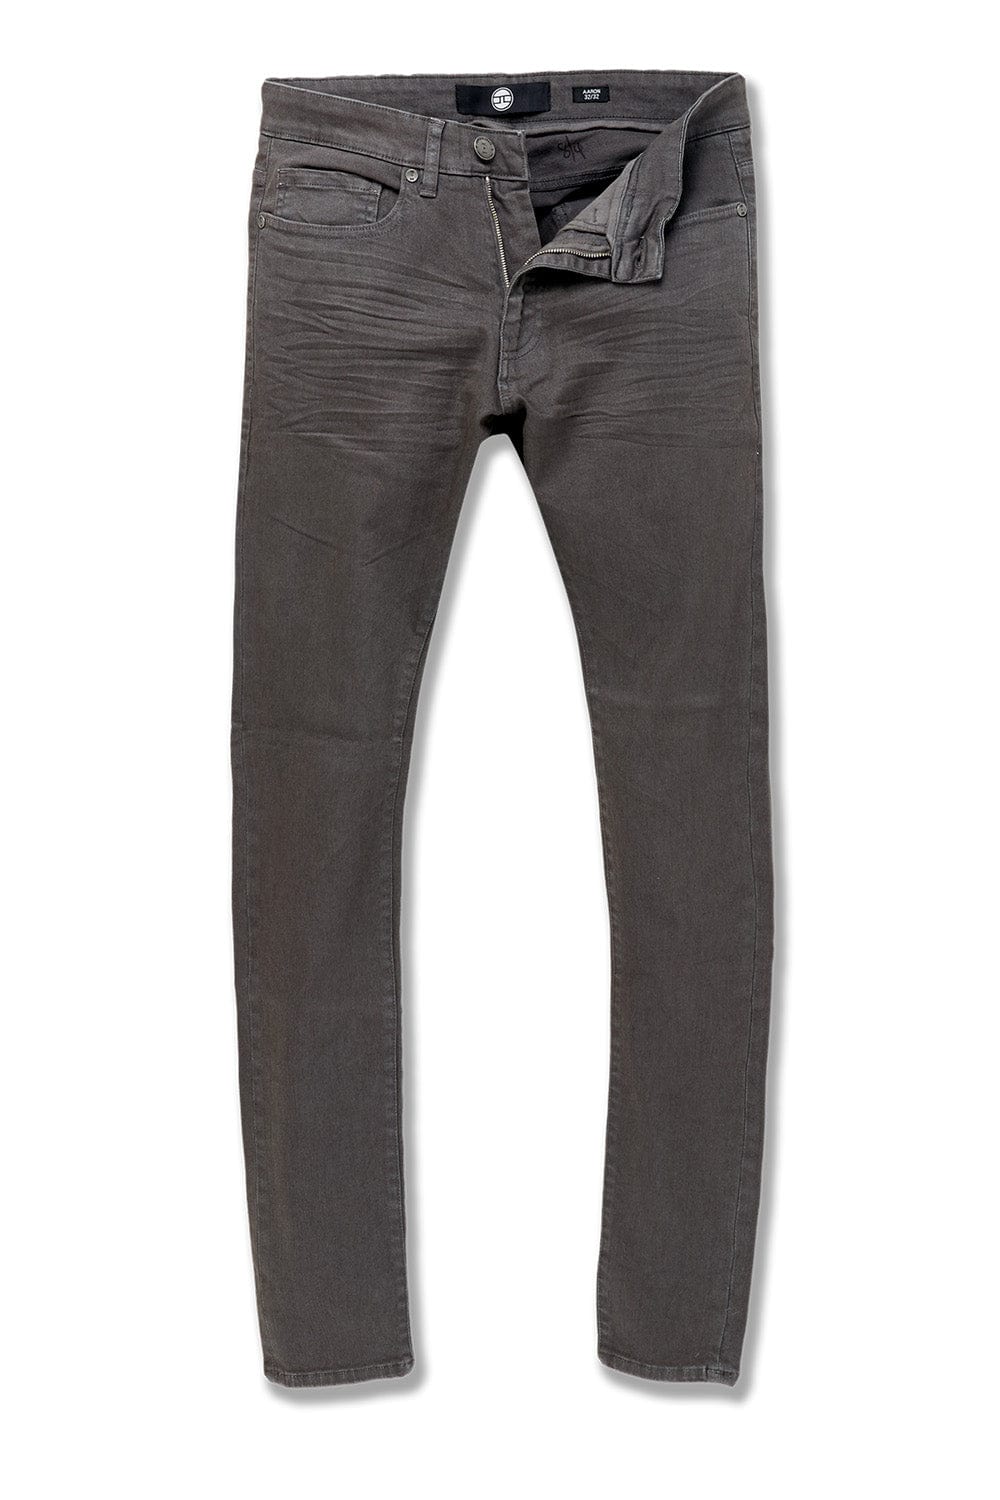 Jordan Craig Ross - Pure Tribeca Twill Pants (Exclusive Colors) Charcoal / 28/32